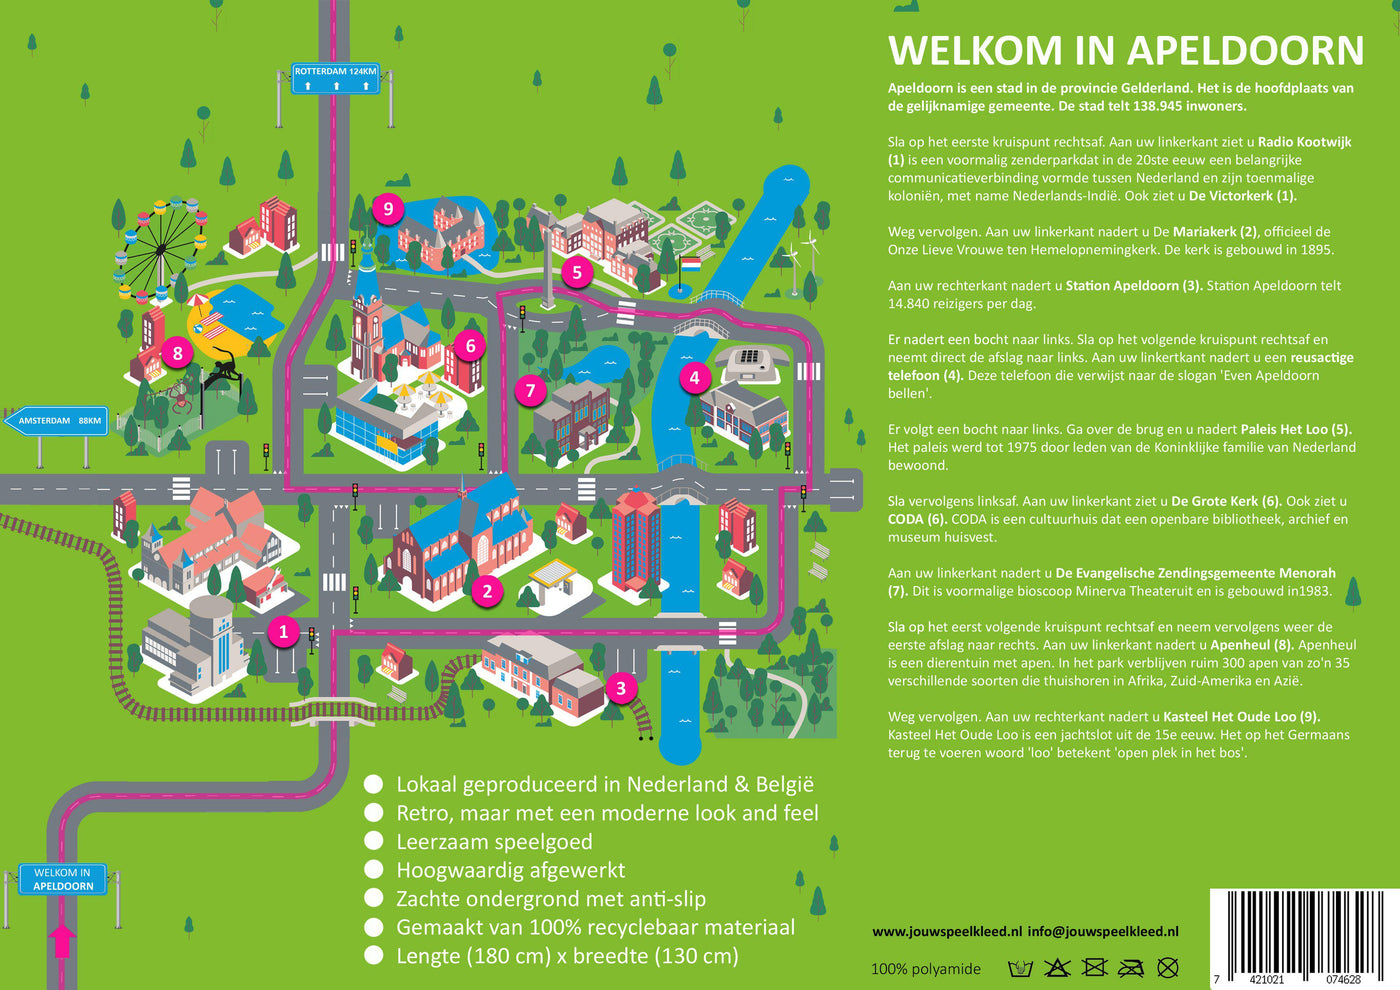 Speelkleed Apeldoorn flyer